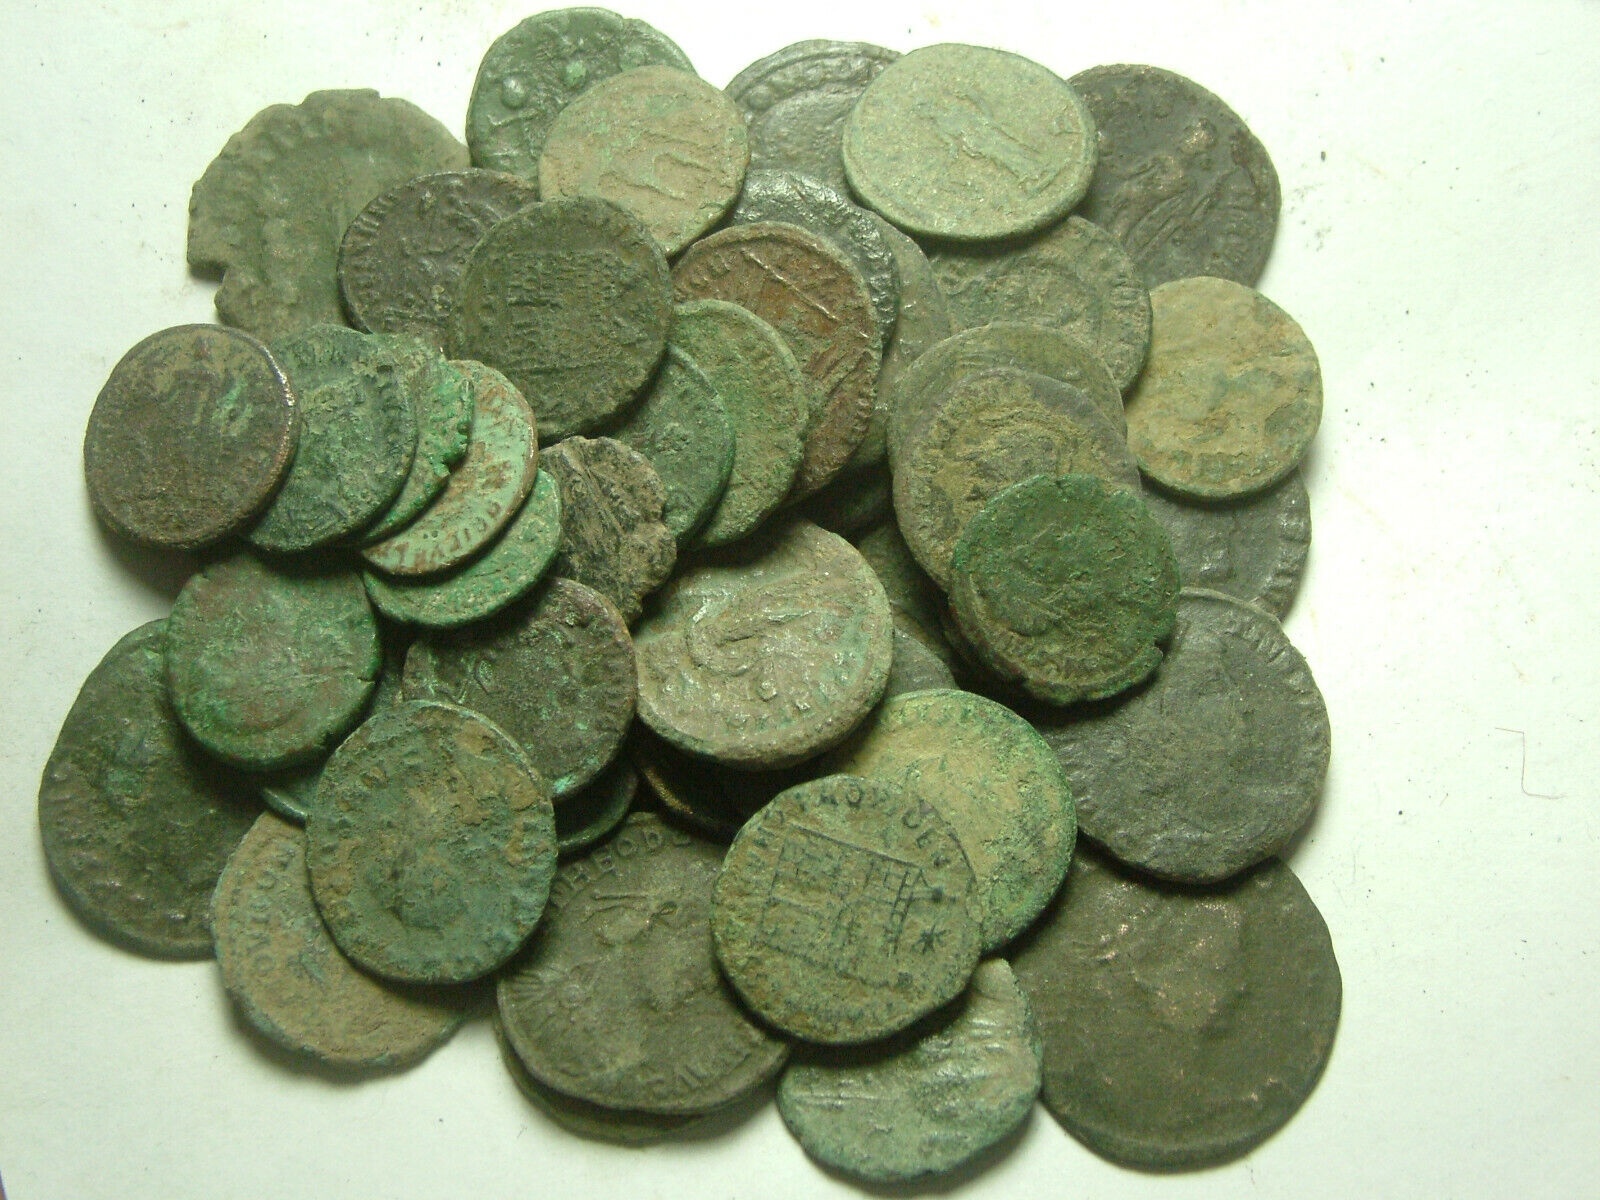 Lot genuine Ancient Roman coins Constantine/Valens/Constantius/Licinius/Claudius Без бренда - фотография #9